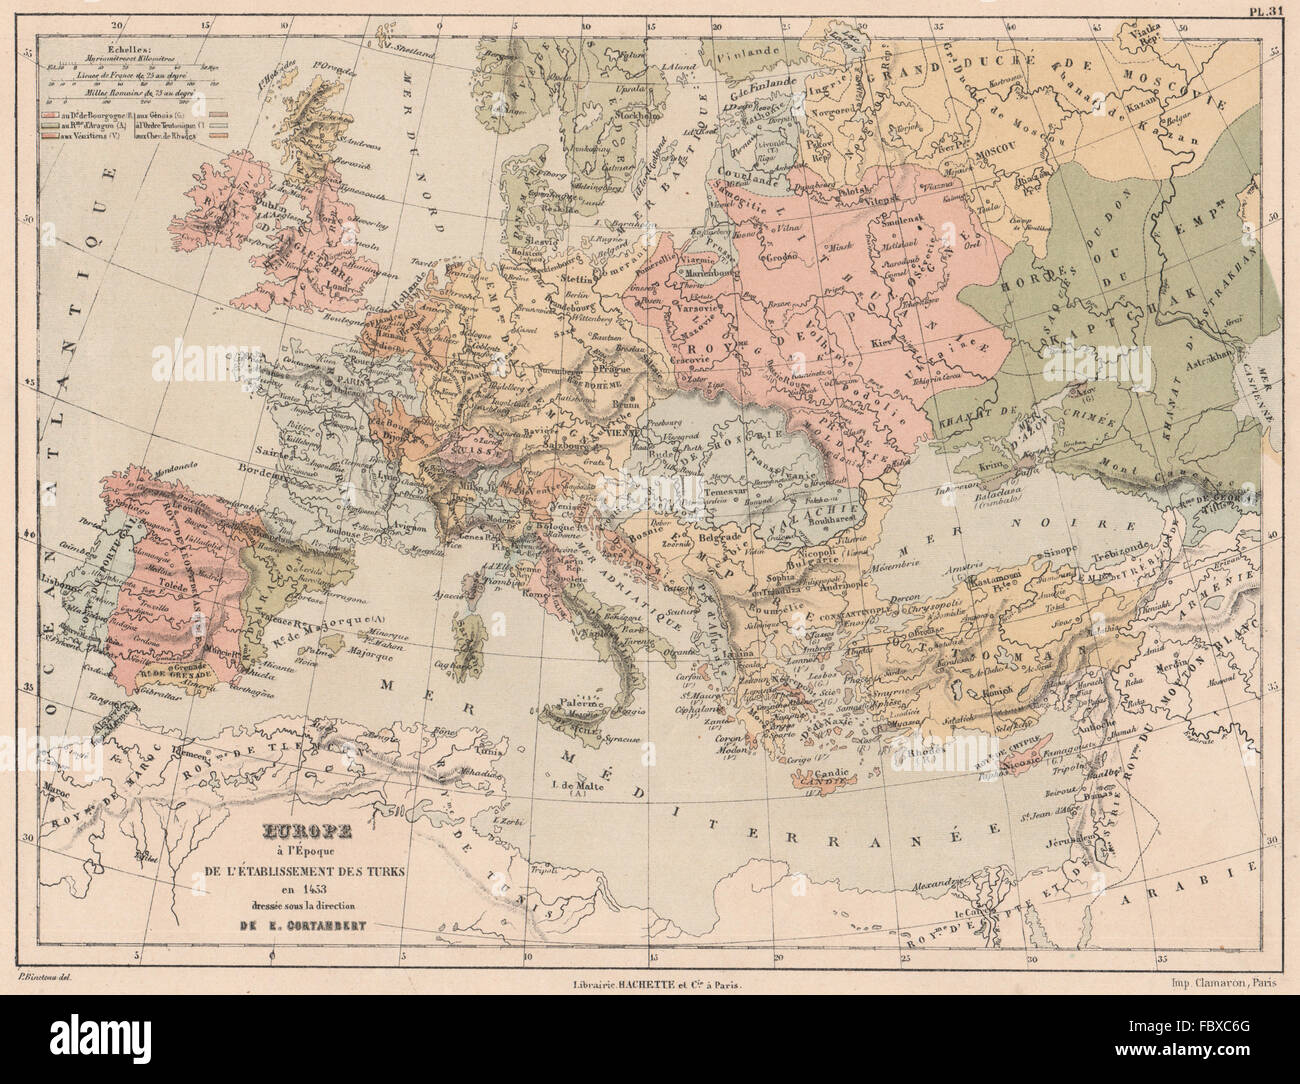 1453 L'Europa sulla creazione dell'Impero Ottomano.Emirato di Grenada 1880 mappa Foto Stock